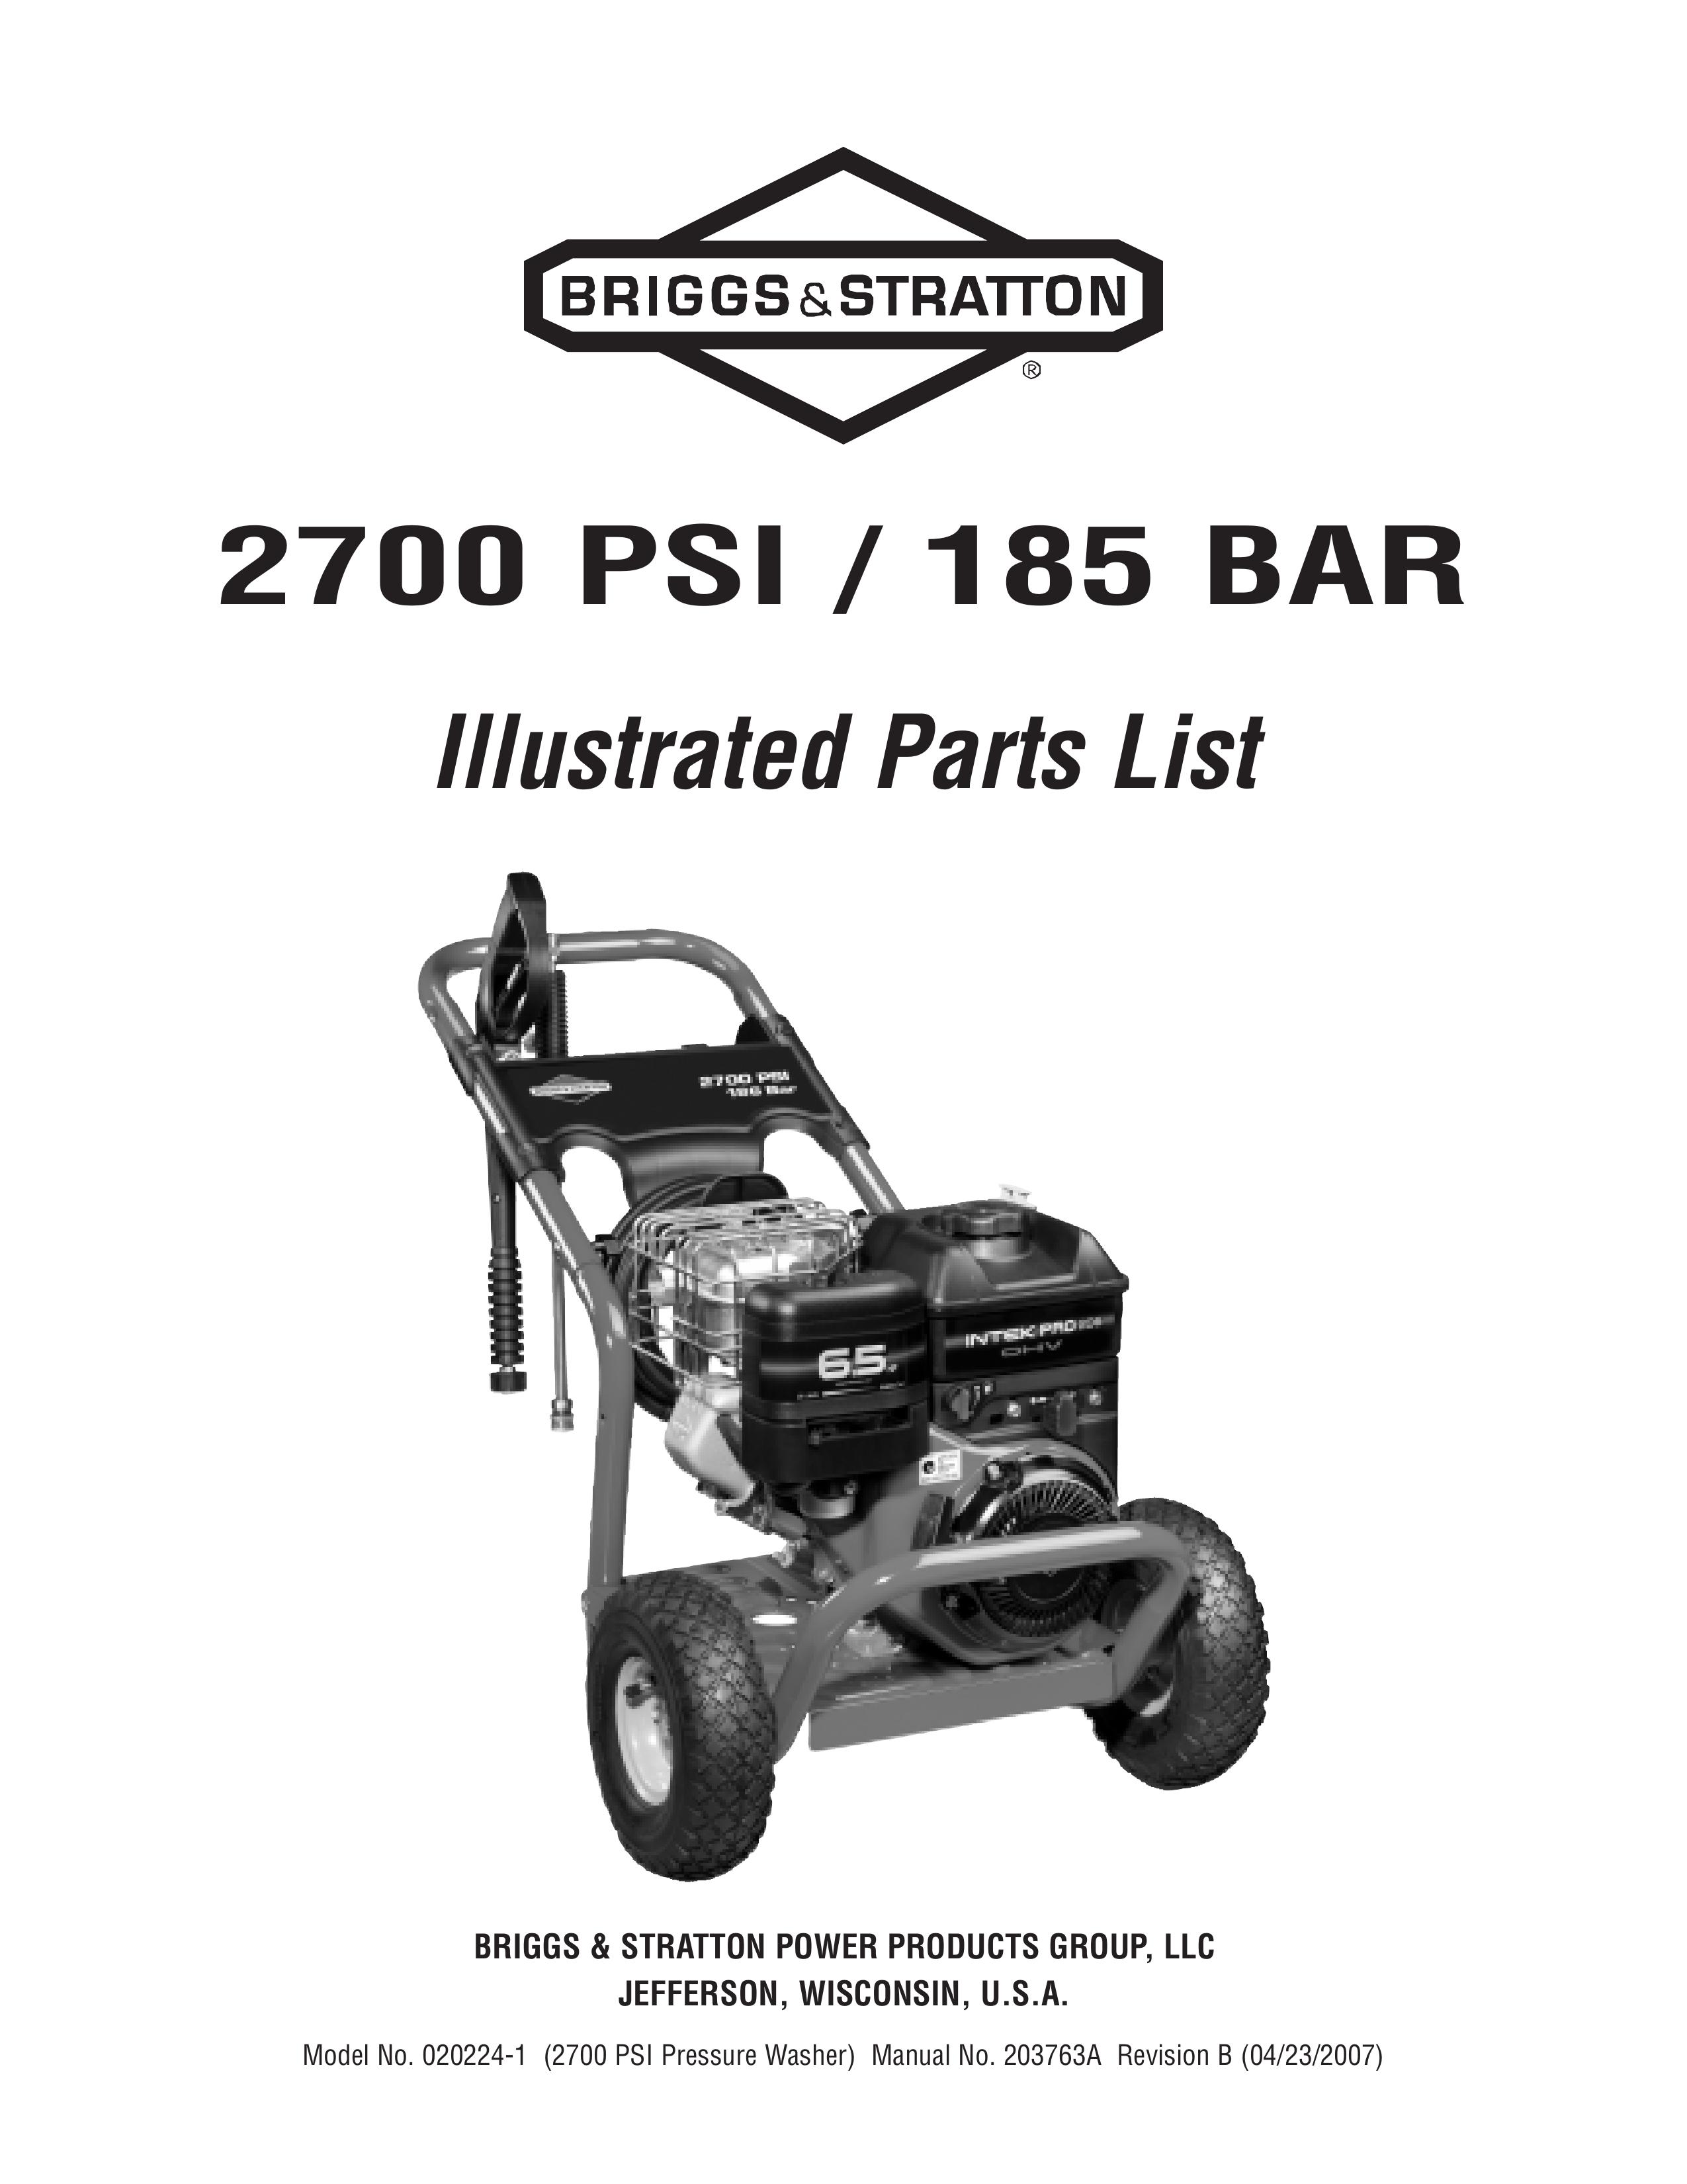 Briggs & Stratton 020224-1 Pressure Washer User Manual